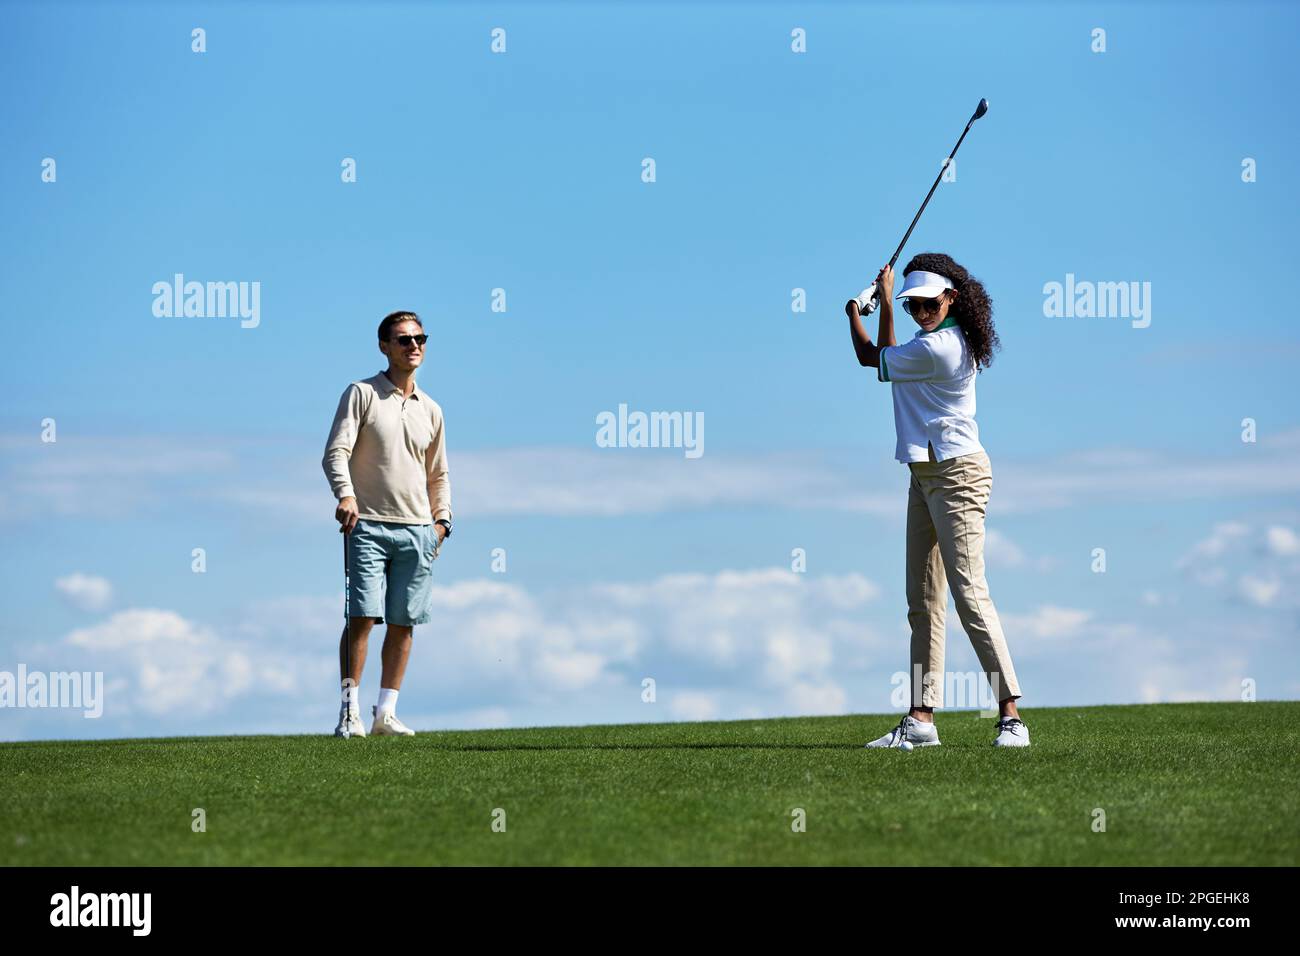 Ein langes Porträt eines aktiven, sportlichen Paares, das Golf gegen den blauen Himmel spielt, mit einer Frau, die Golfschläger spielt Stockfoto